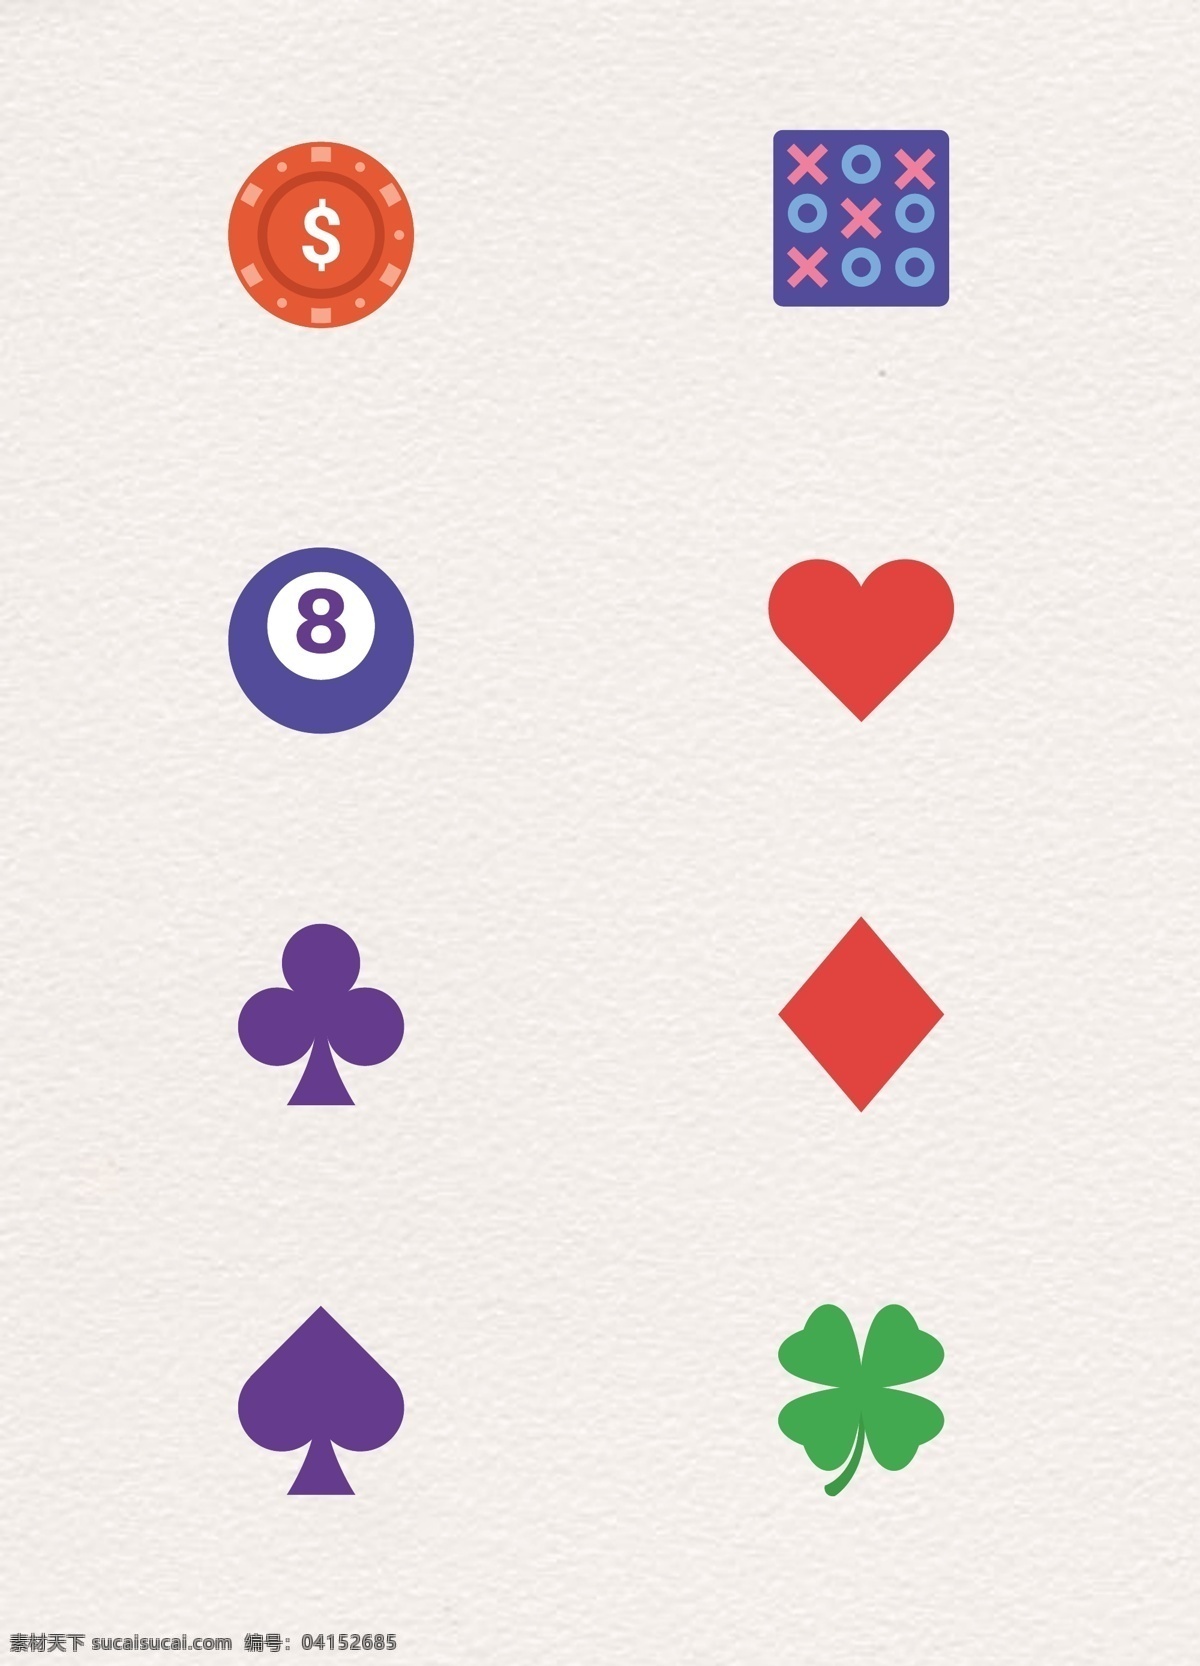 扁平化 赌博 娱乐 矢量 图标素材 卡通 扑克牌 筹码 五子棋 保龄球